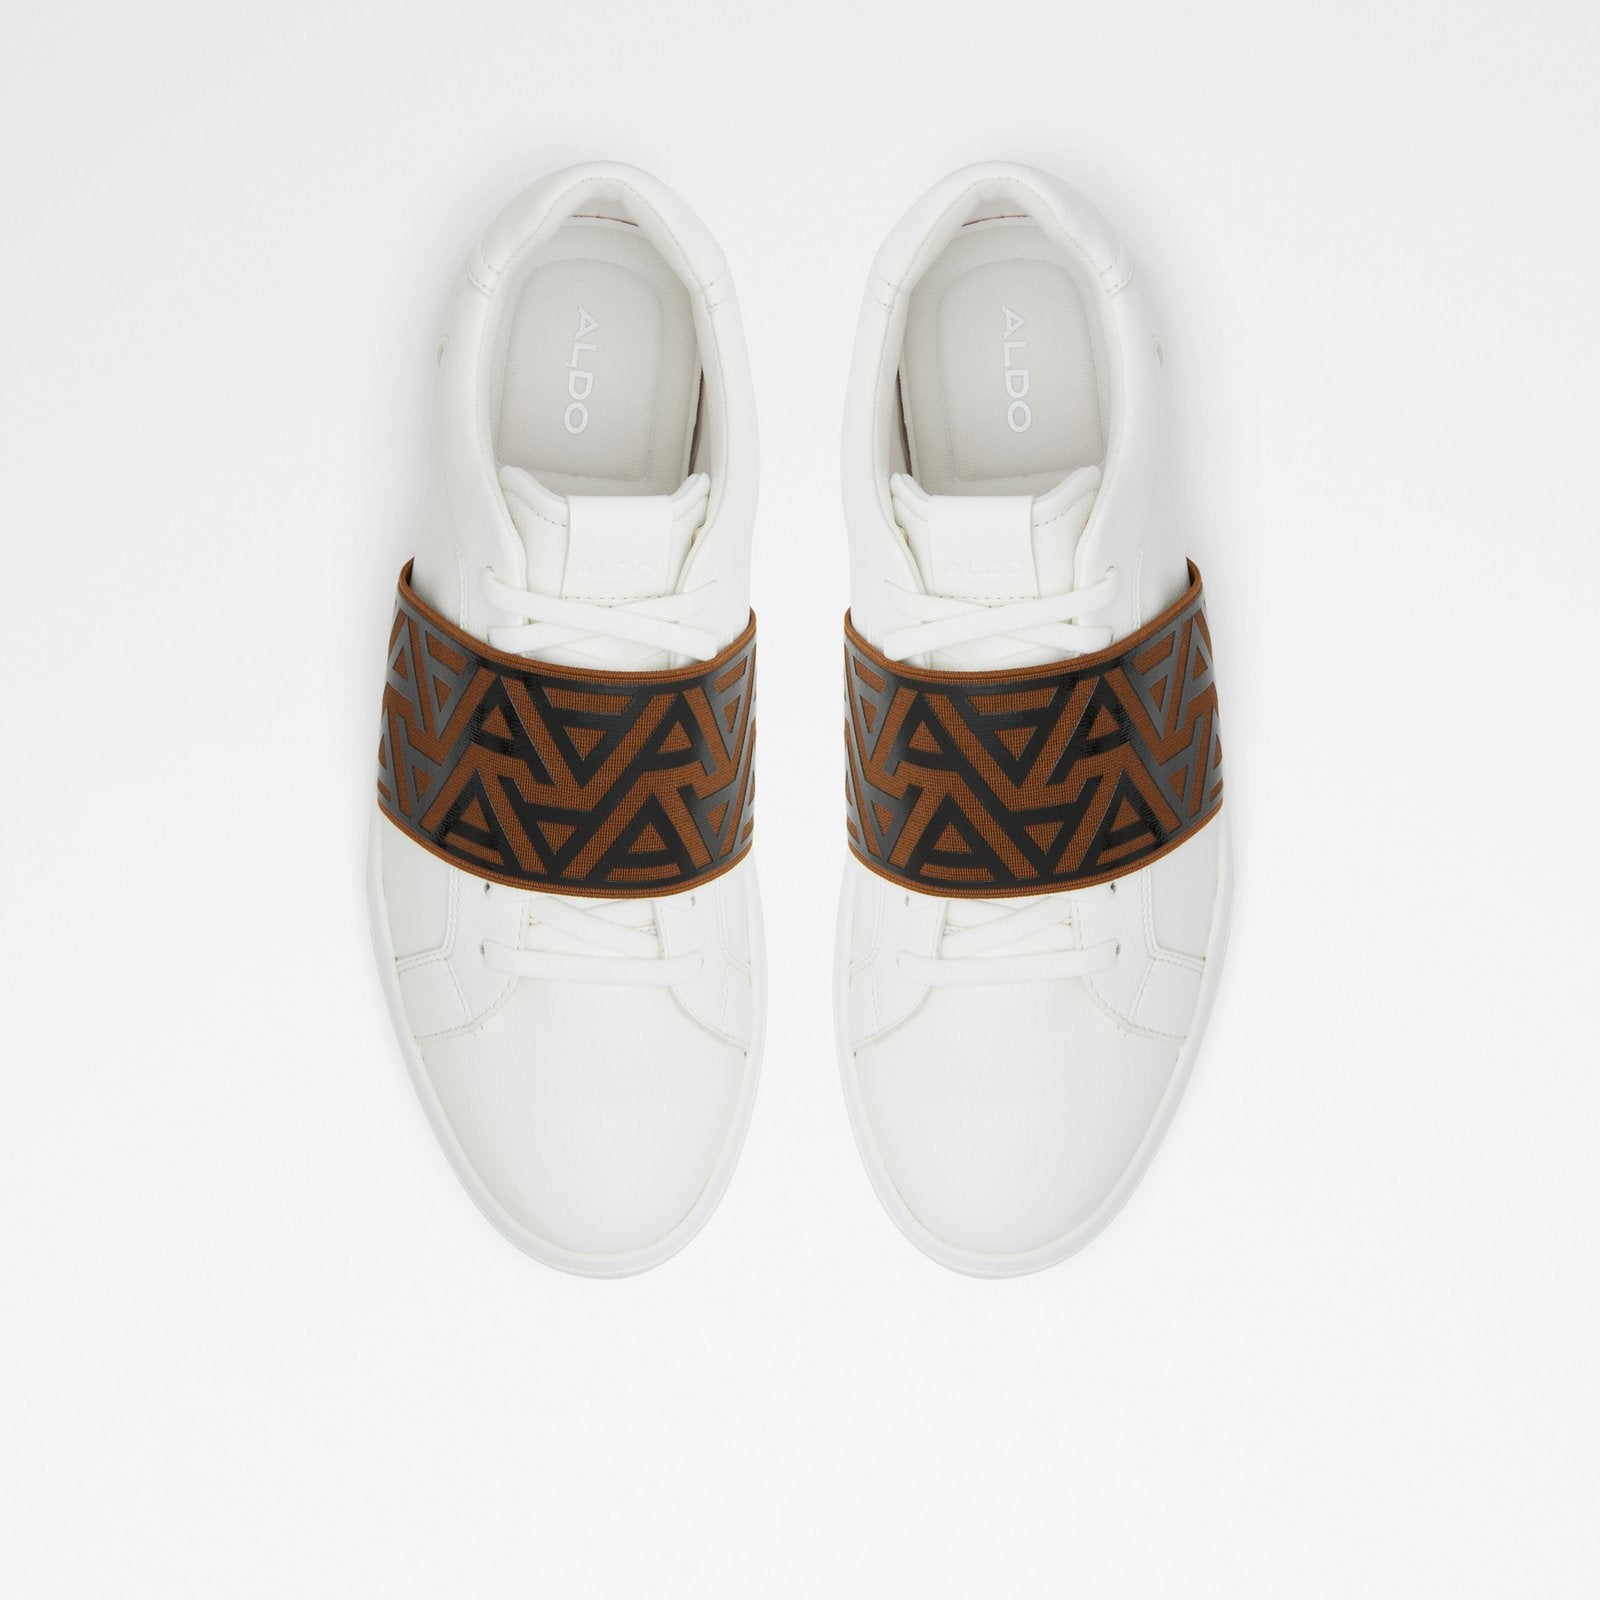 Coppio Men Shoes - White - ALDO KSA